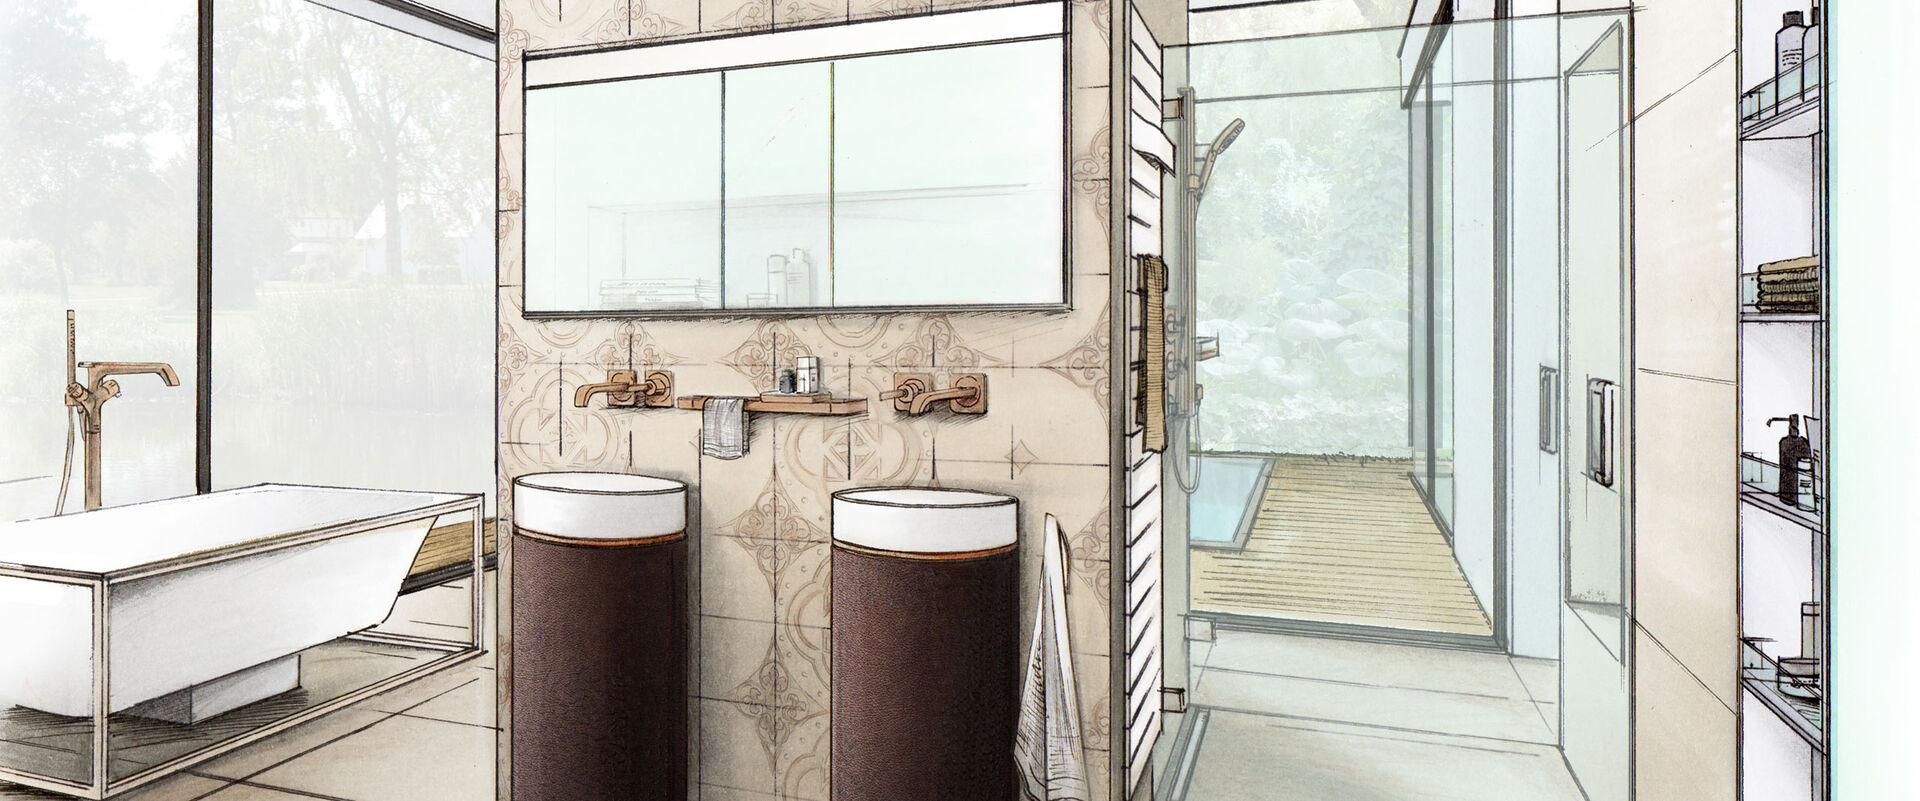 Badplanungszeichnung: frontal ein Spiegelschrank, darunter zwei Waschtischsäulen in Braun mit weißer Keramik. Badewanne, Dusche, Kopfbrause.